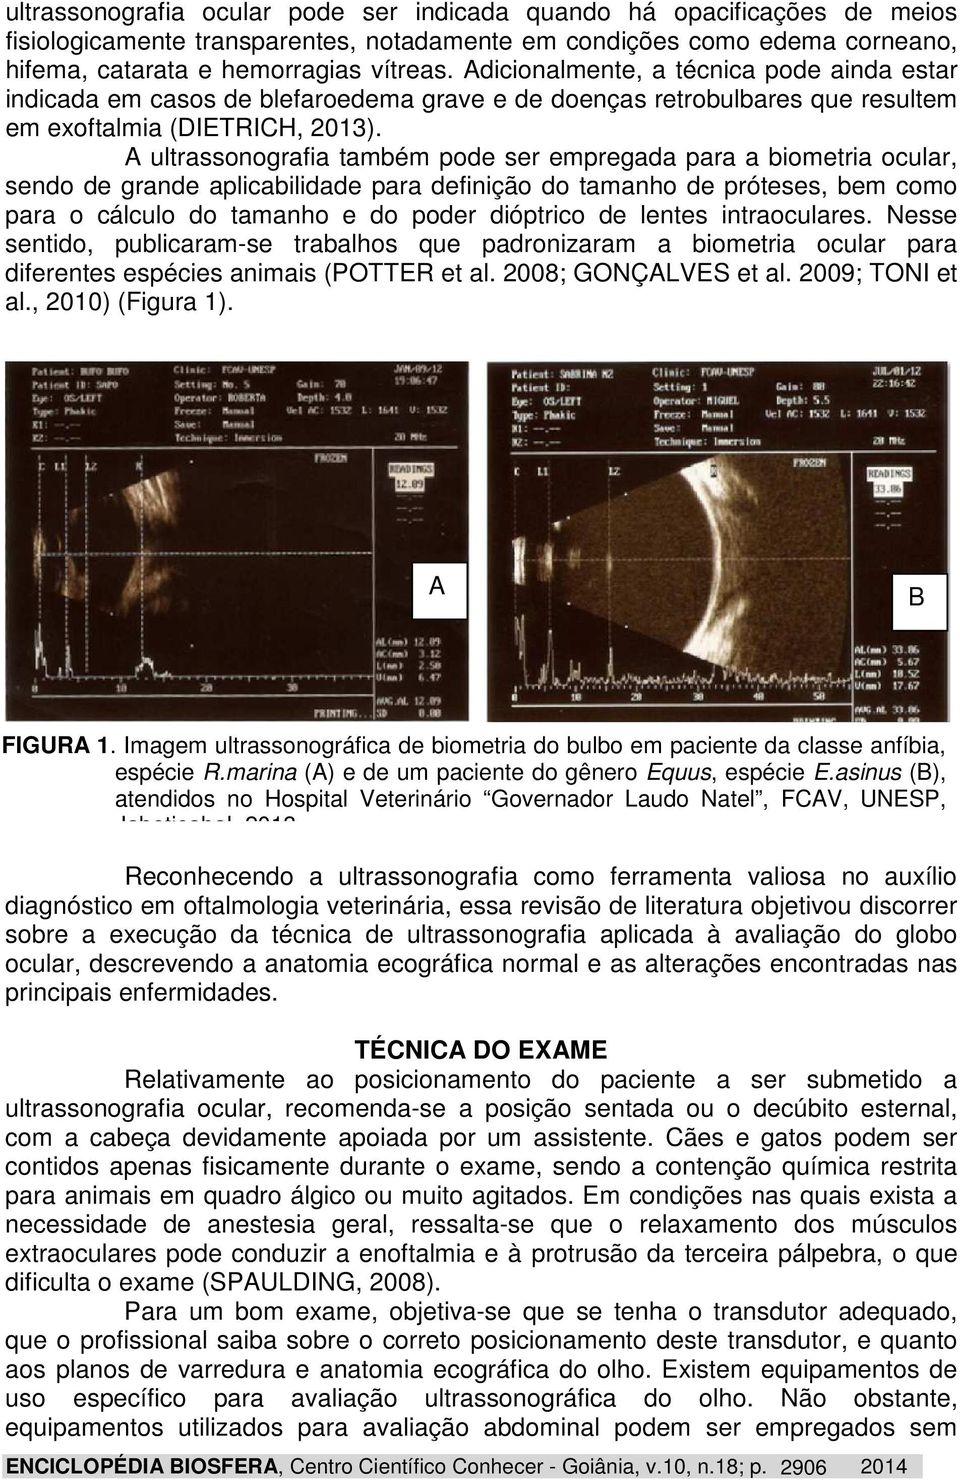 A ultrassonografia também pode ser empregada para a biometria ocular, sendo de grande aplicabilidade para definição do tamanho de próteses, bem como para o cálculo do tamanho e do poder dióptrico de